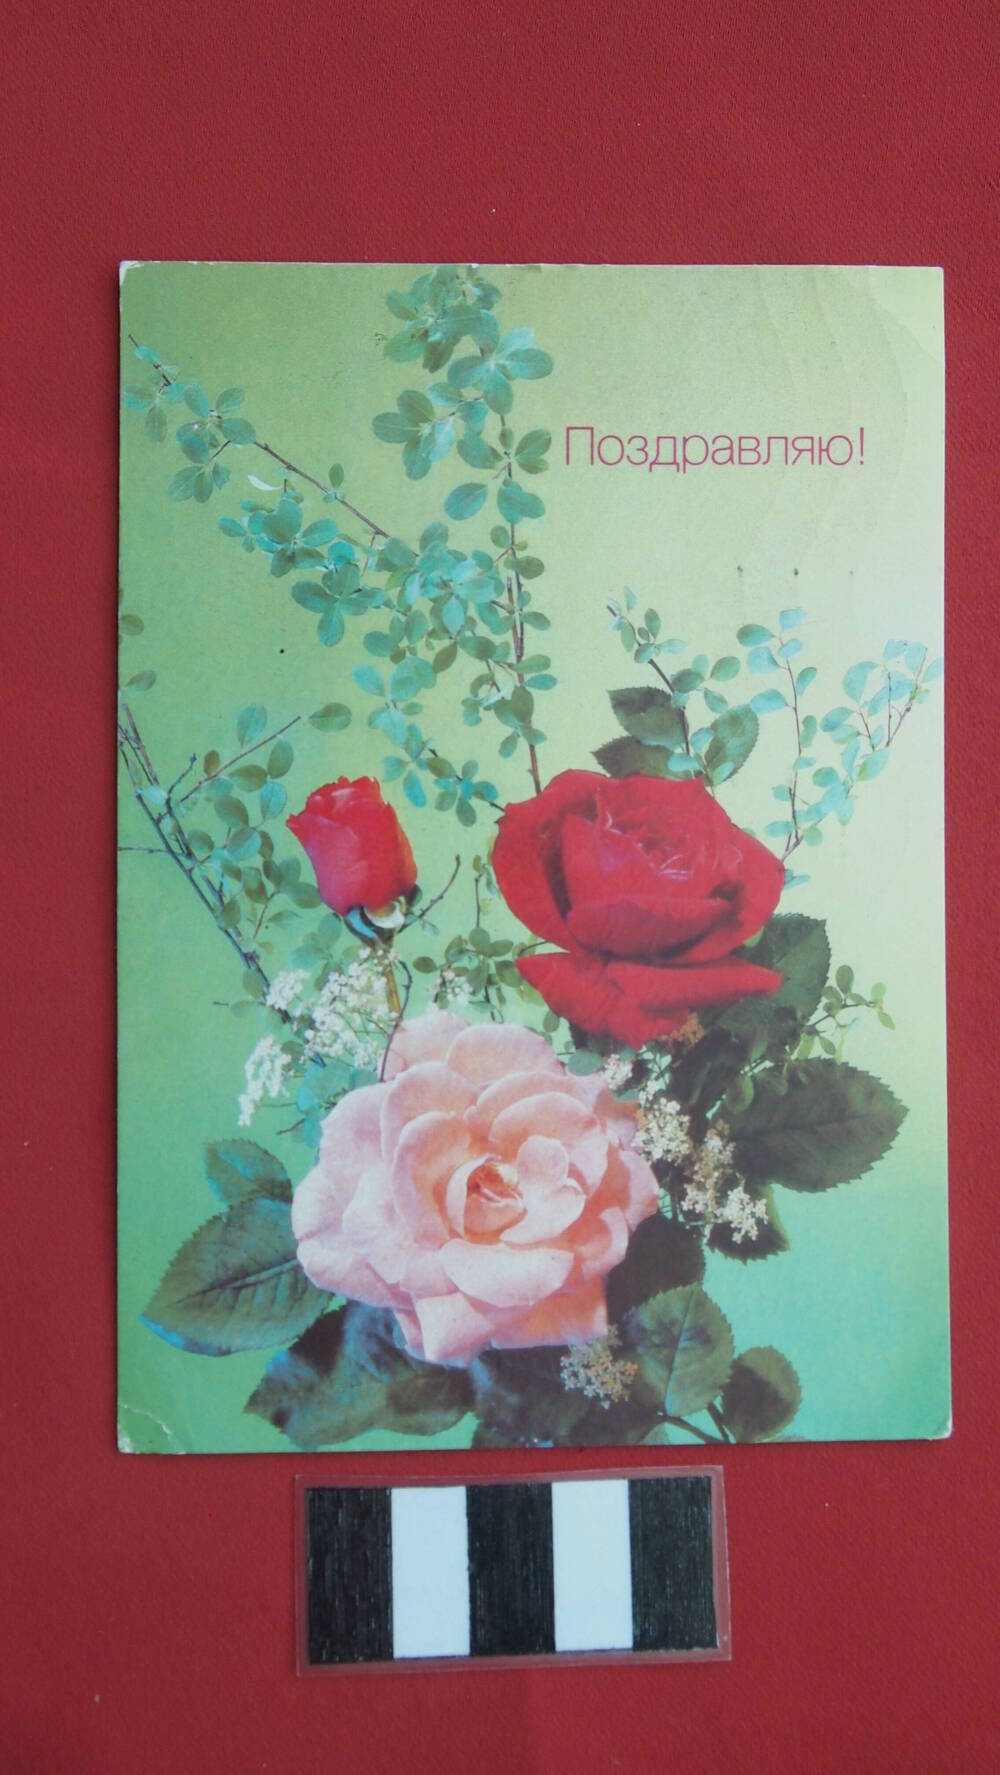 Почтовая поздравительная открытка Поздравляю!, фото И. Дергилева (розы)